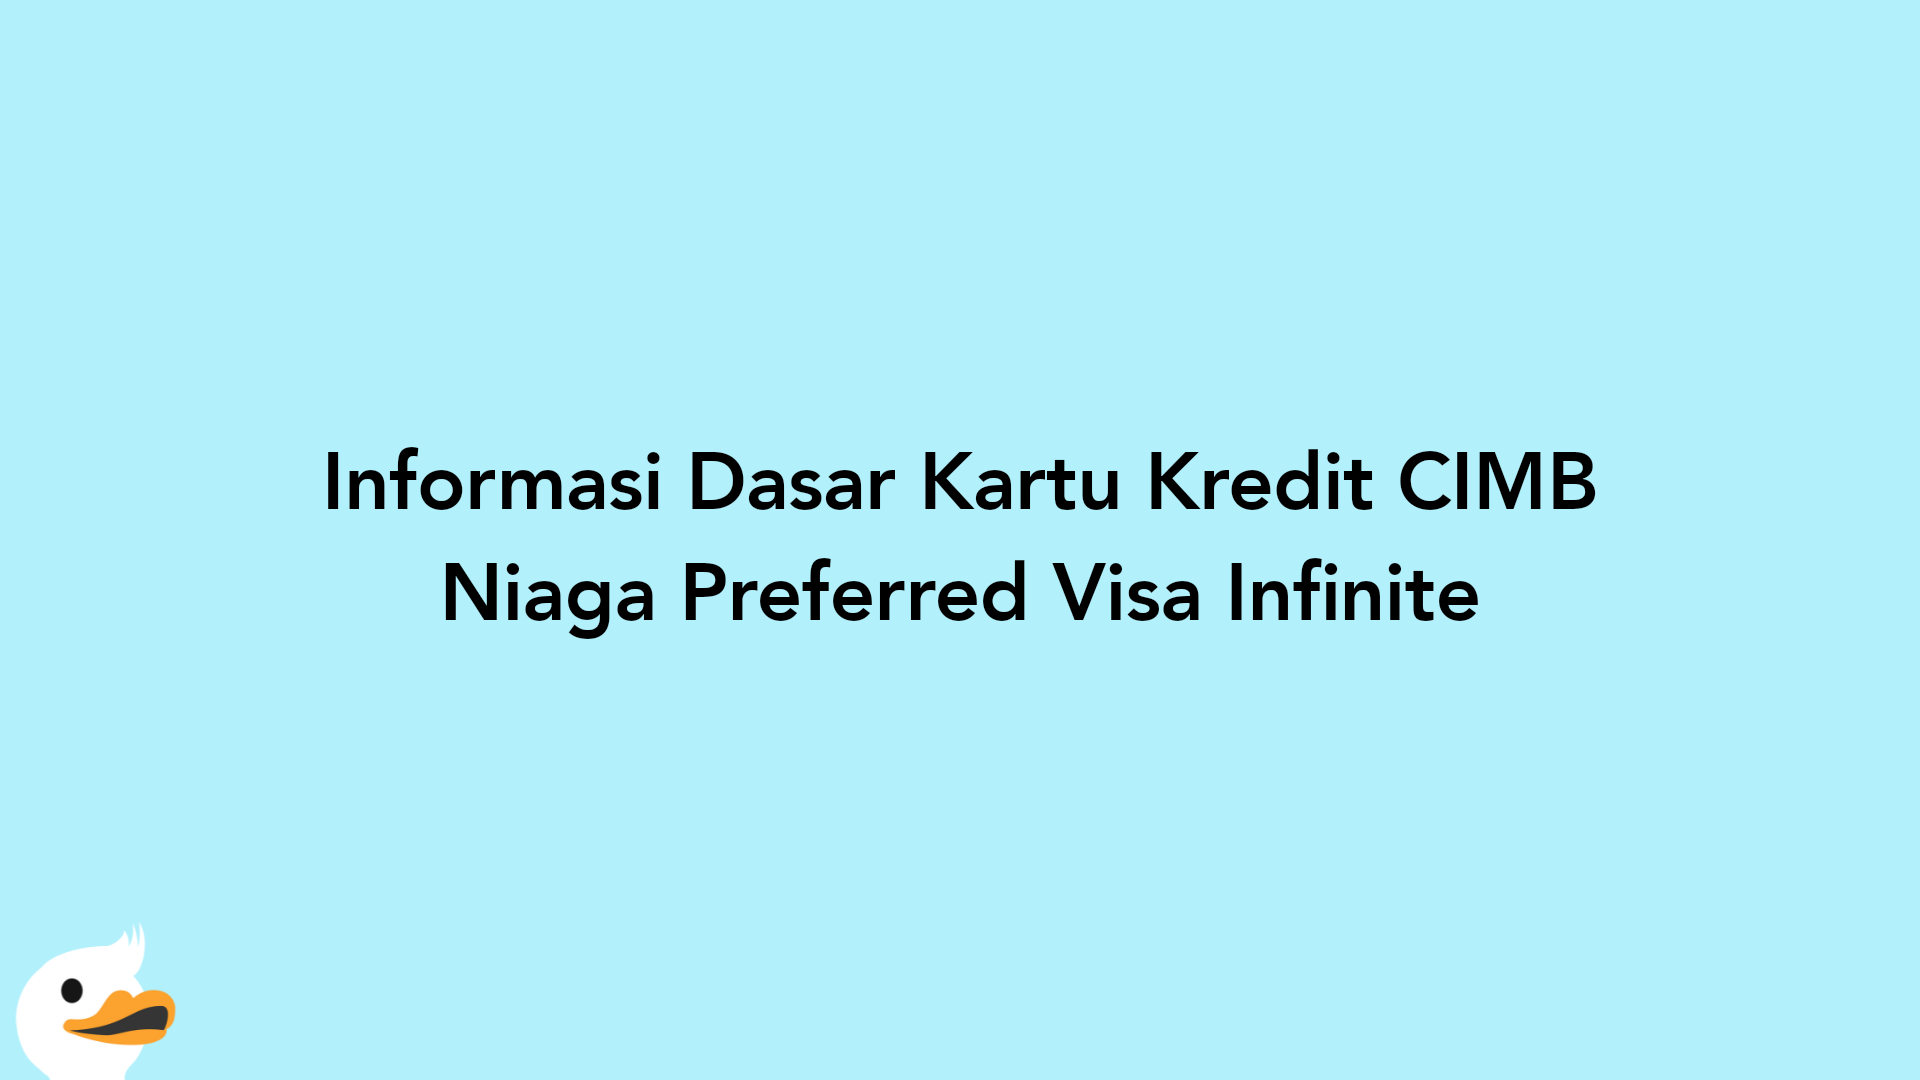 Informasi Dasar Kartu Kredit CIMB Niaga Preferred Visa Infinite